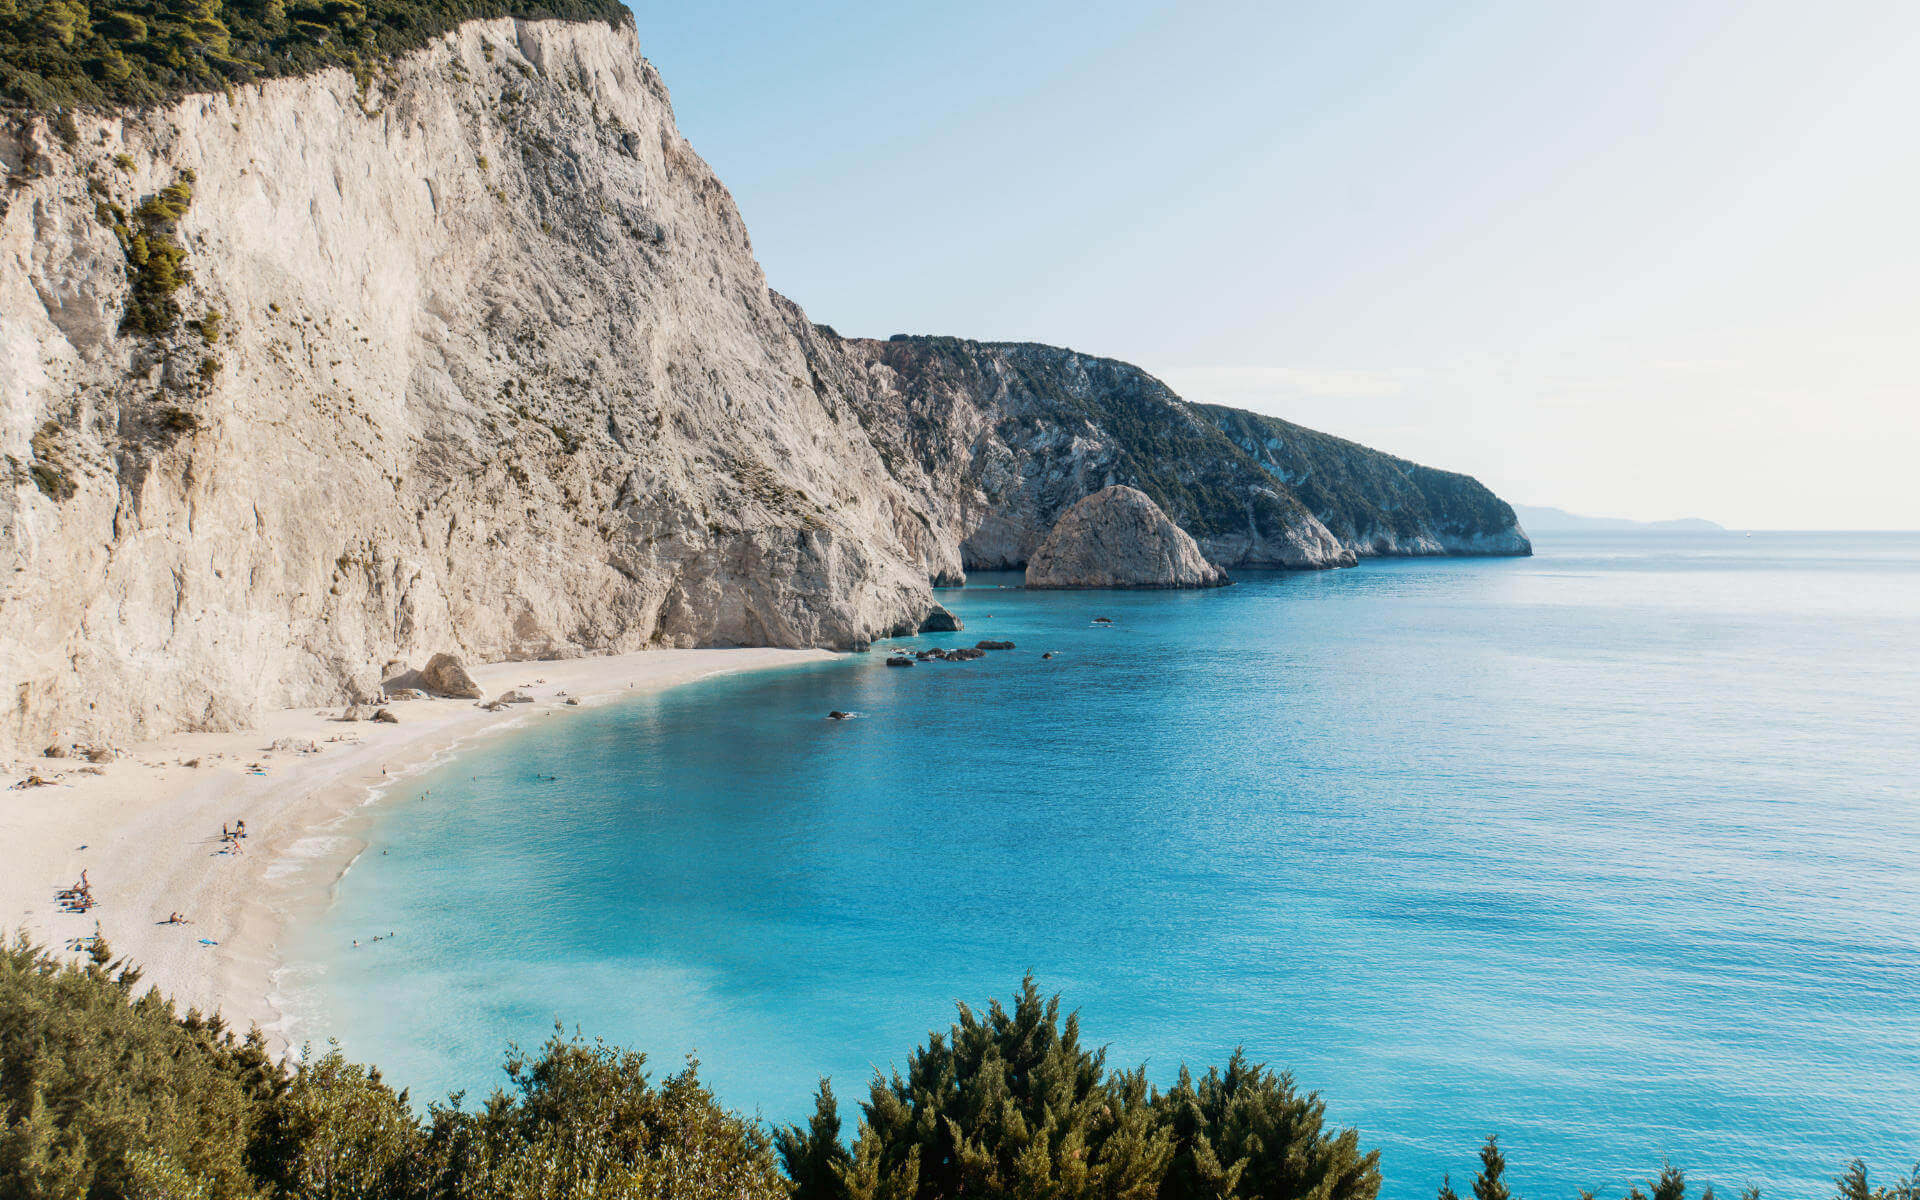 Hohe Wände aus Kalkfelsen umrahmen die traumhafte Bucht von Porto Katsiki auf der griechischen Insel Lefkada. Besucher sonnen sich am feinen Sandstrand, ein paar von ihnen baden in dem türkisblauen Wasser des Ionischen Meers.